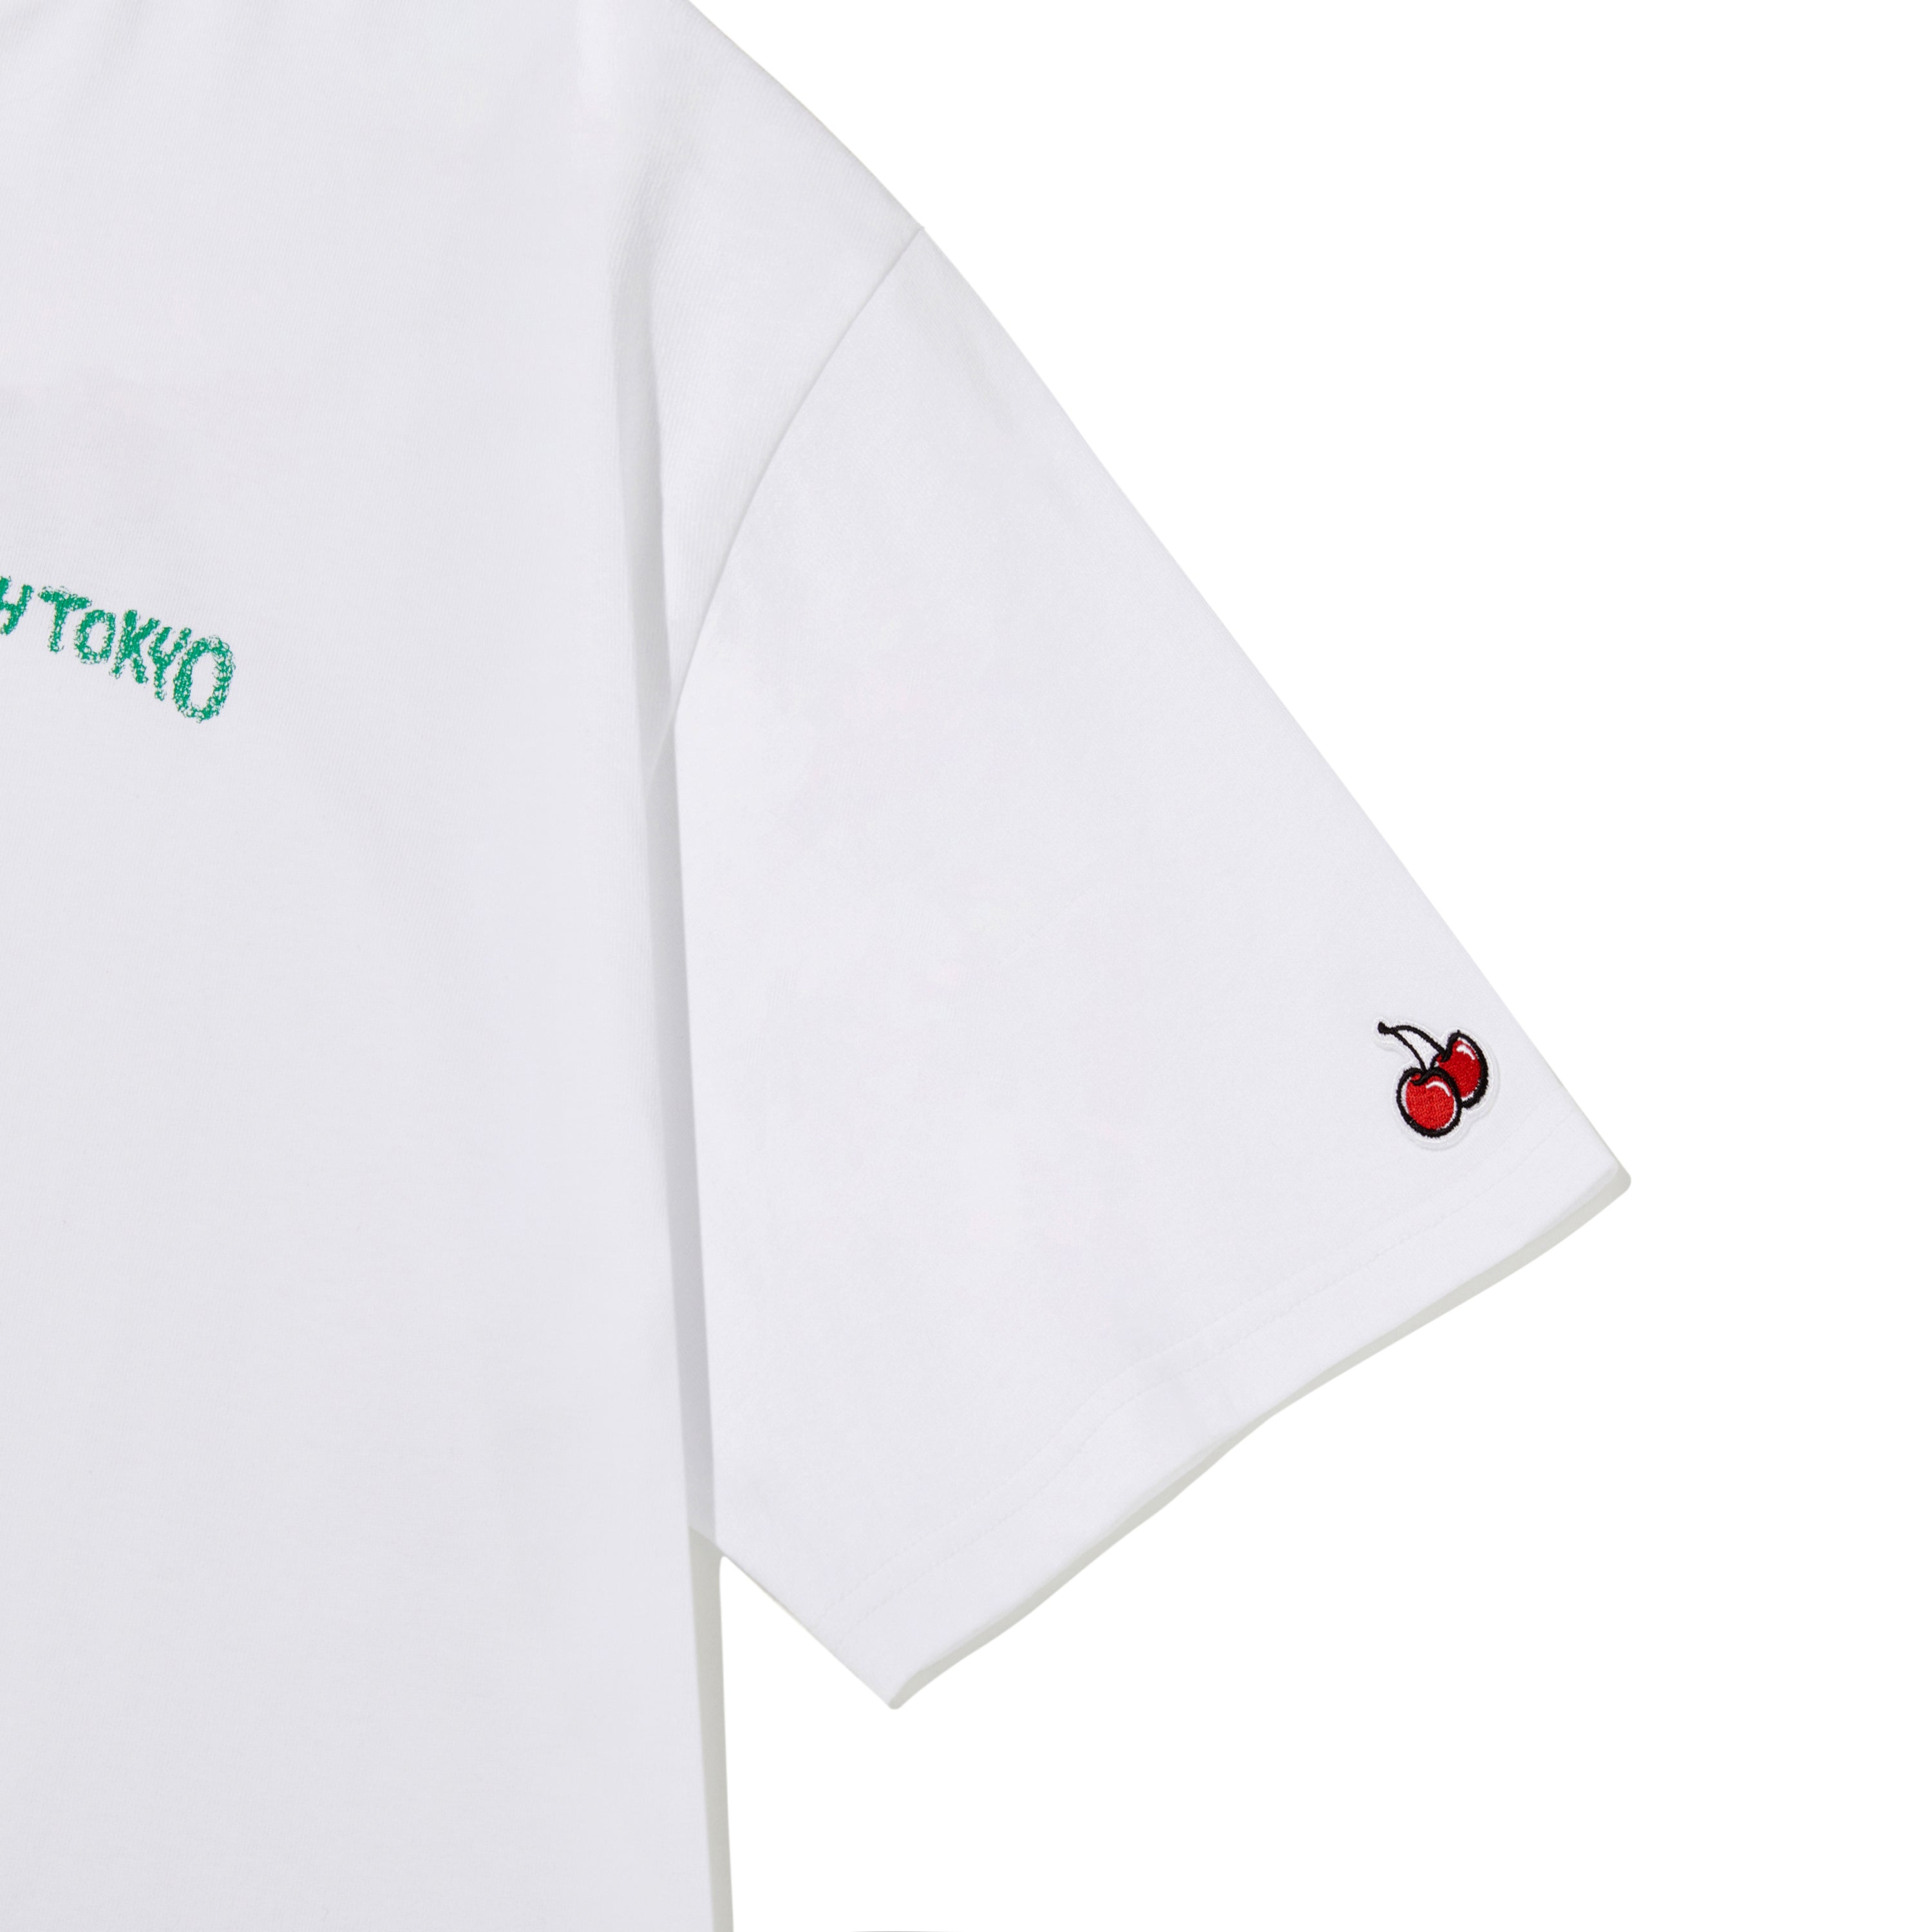 【日本限定】KIRSH X TOKYO ハンドロゴTシャツ【ホワイト】